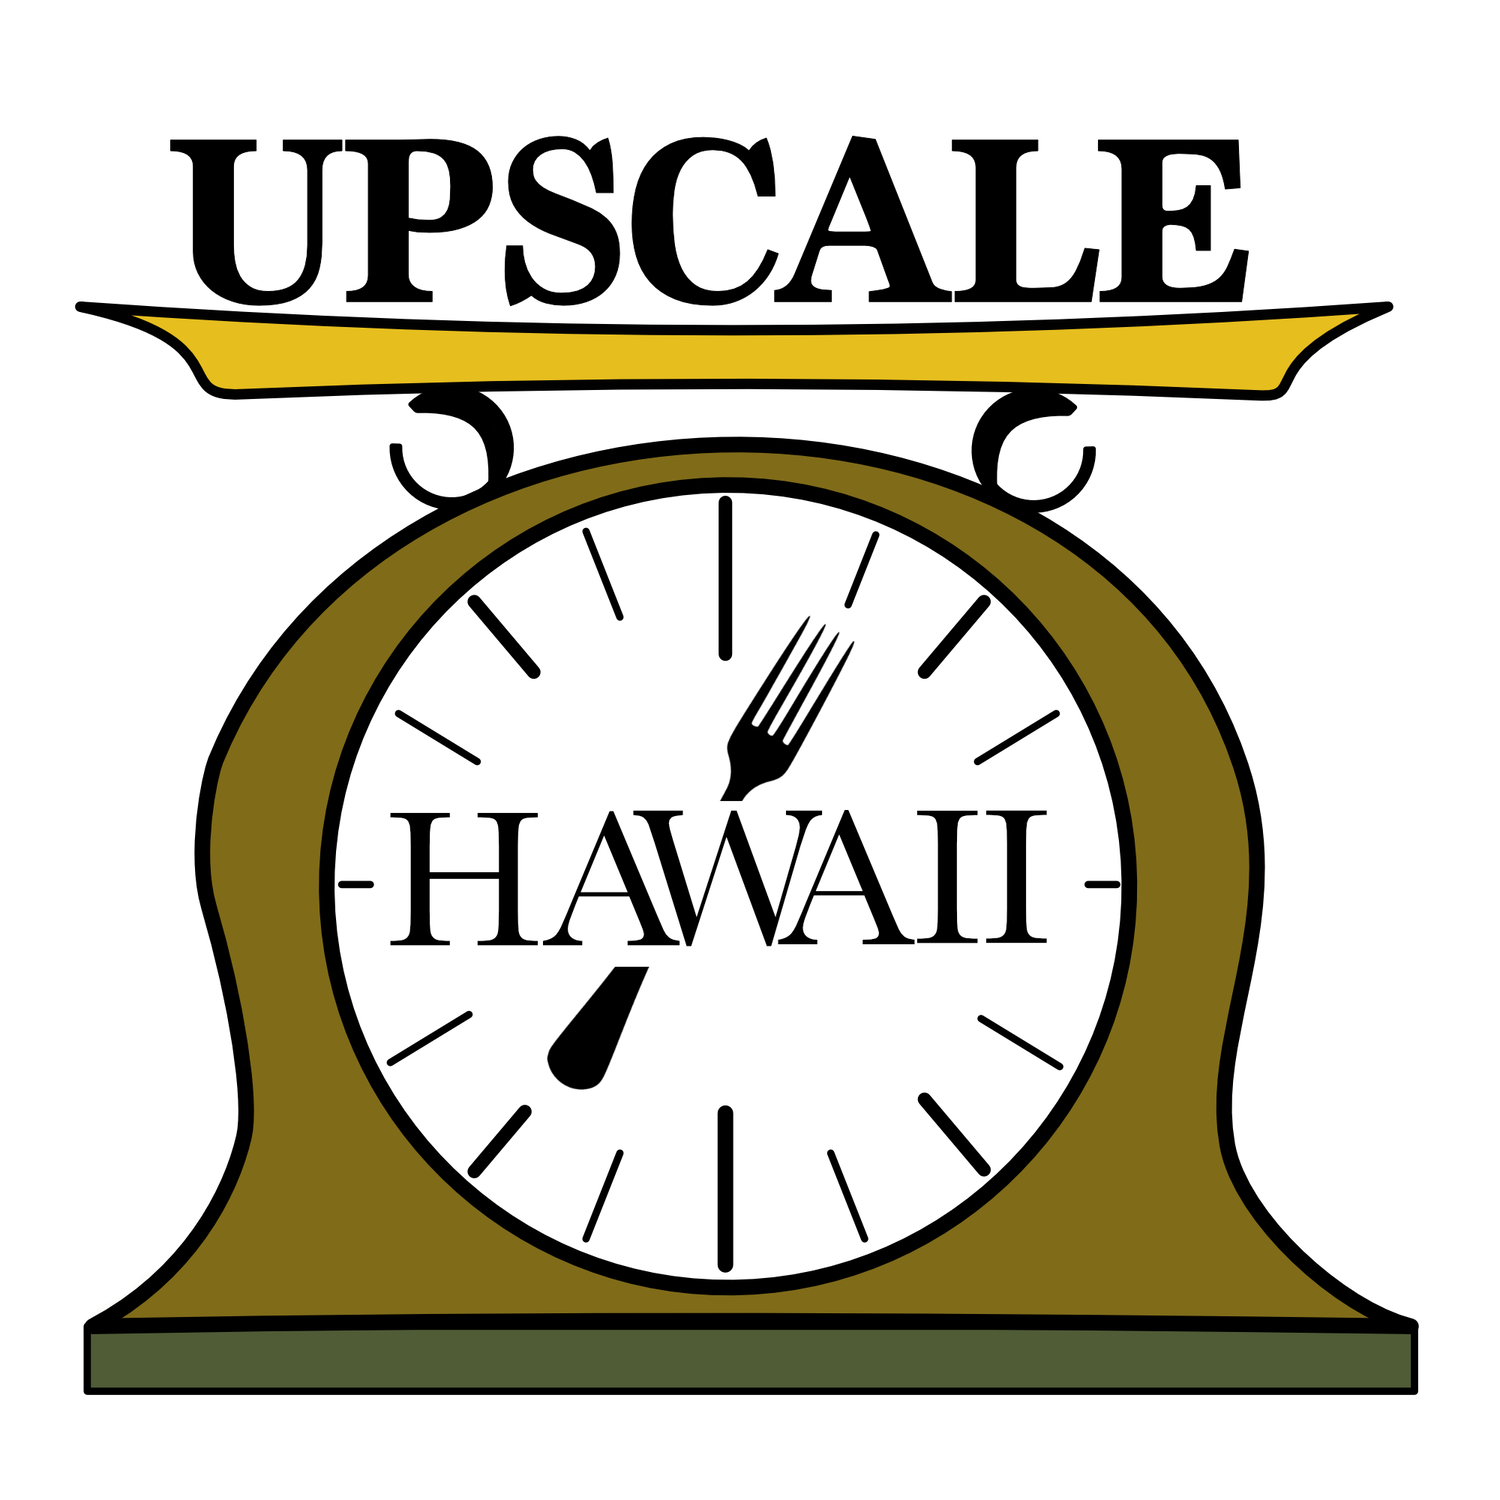 Upscale Hawaii - An Upscale Take Out Restaurant on Oahu, Hawaii